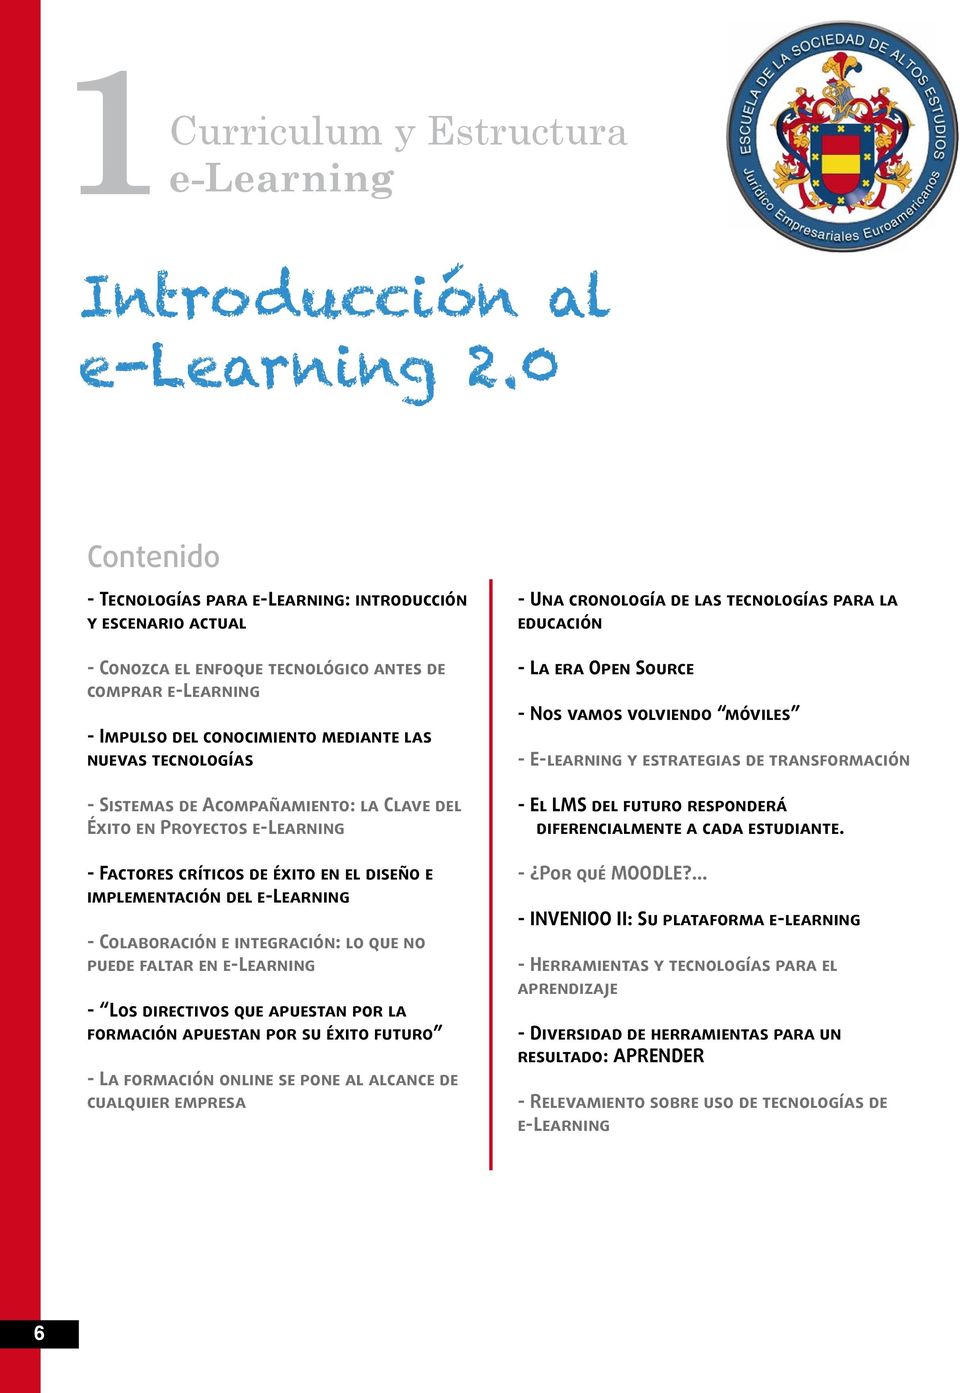 Acompañamiento: la Clave del Éxito en Proyectos e-learning - Factores críticos de éxito en el diseño e implementación del e-learning - Colaboración e integración: lo que no puede faltar en e-learning